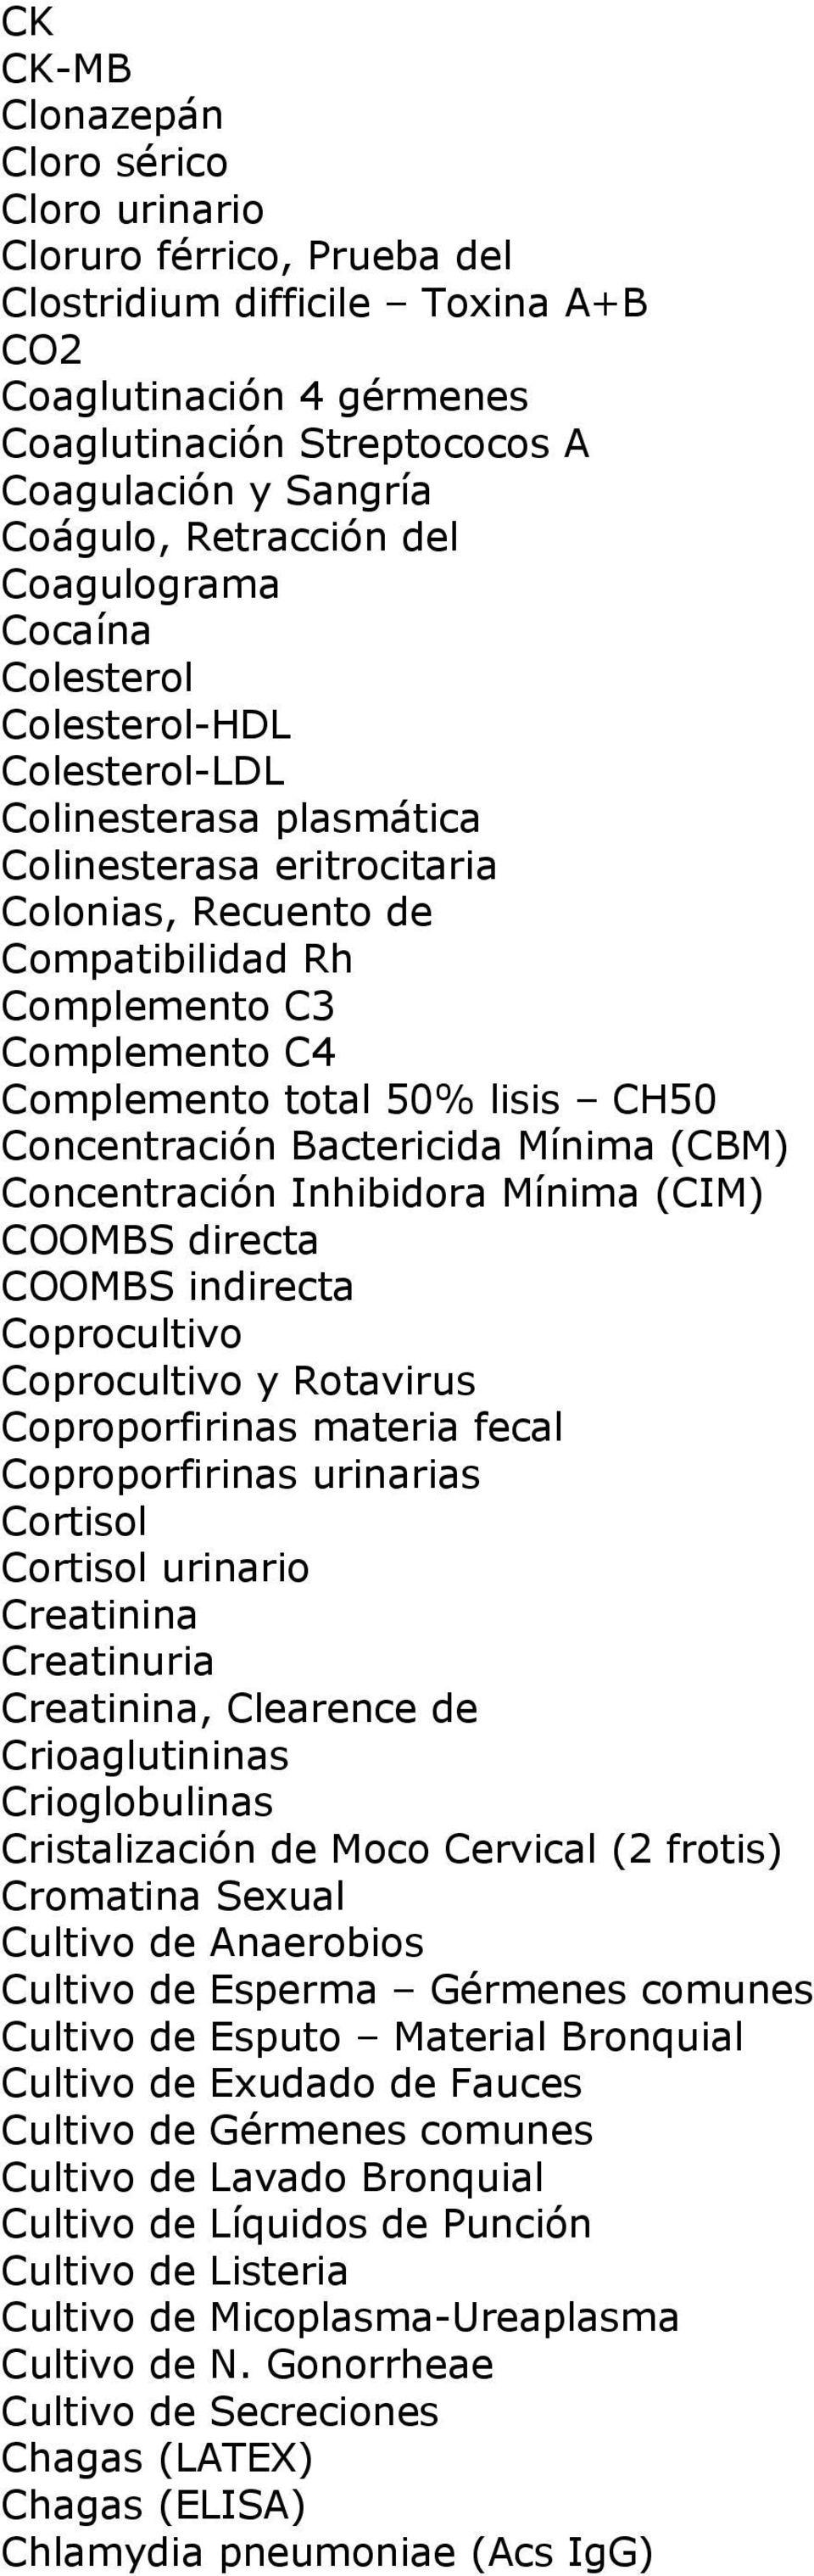 Complemento total 50% lisis CH50 Concentración Bactericida Mínima (CBM) Concentración Inhibidora Mínima (CIM) COOMBS directa COOMBS indirecta Coprocultivo Coprocultivo y Rotavirus Coproporfirinas